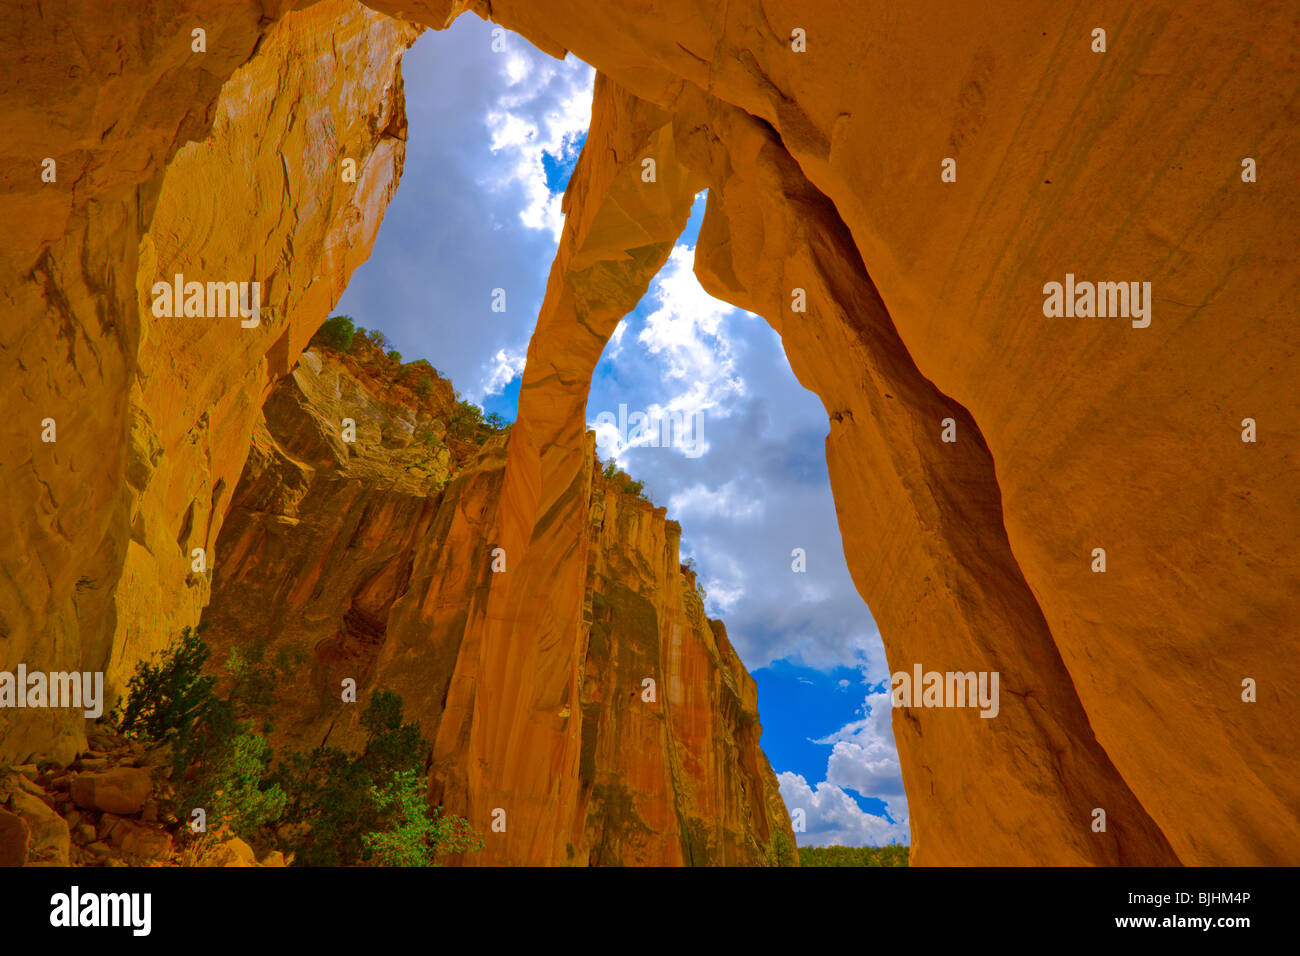 La Ventana Arch, Cebolla Wildnis, New Mexico, in der Nähe von El Malpais National Monument, große natürliche Sandstein Bogen Stockfoto